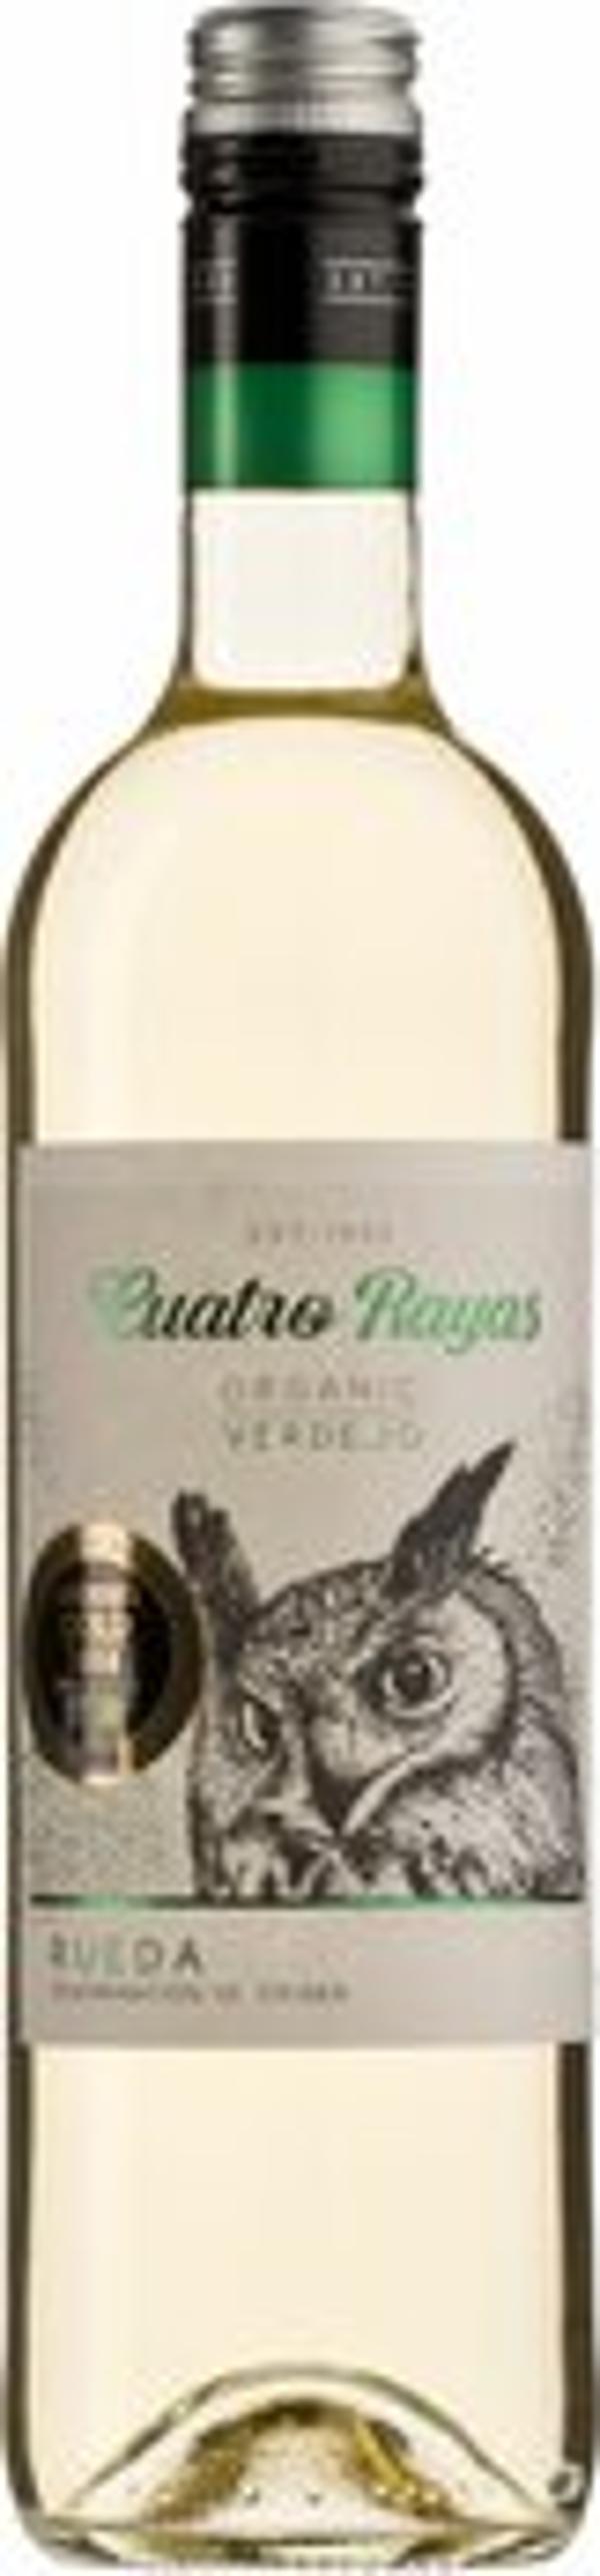 Produktfoto zu Cuatro Rayas Rueda Verdejo